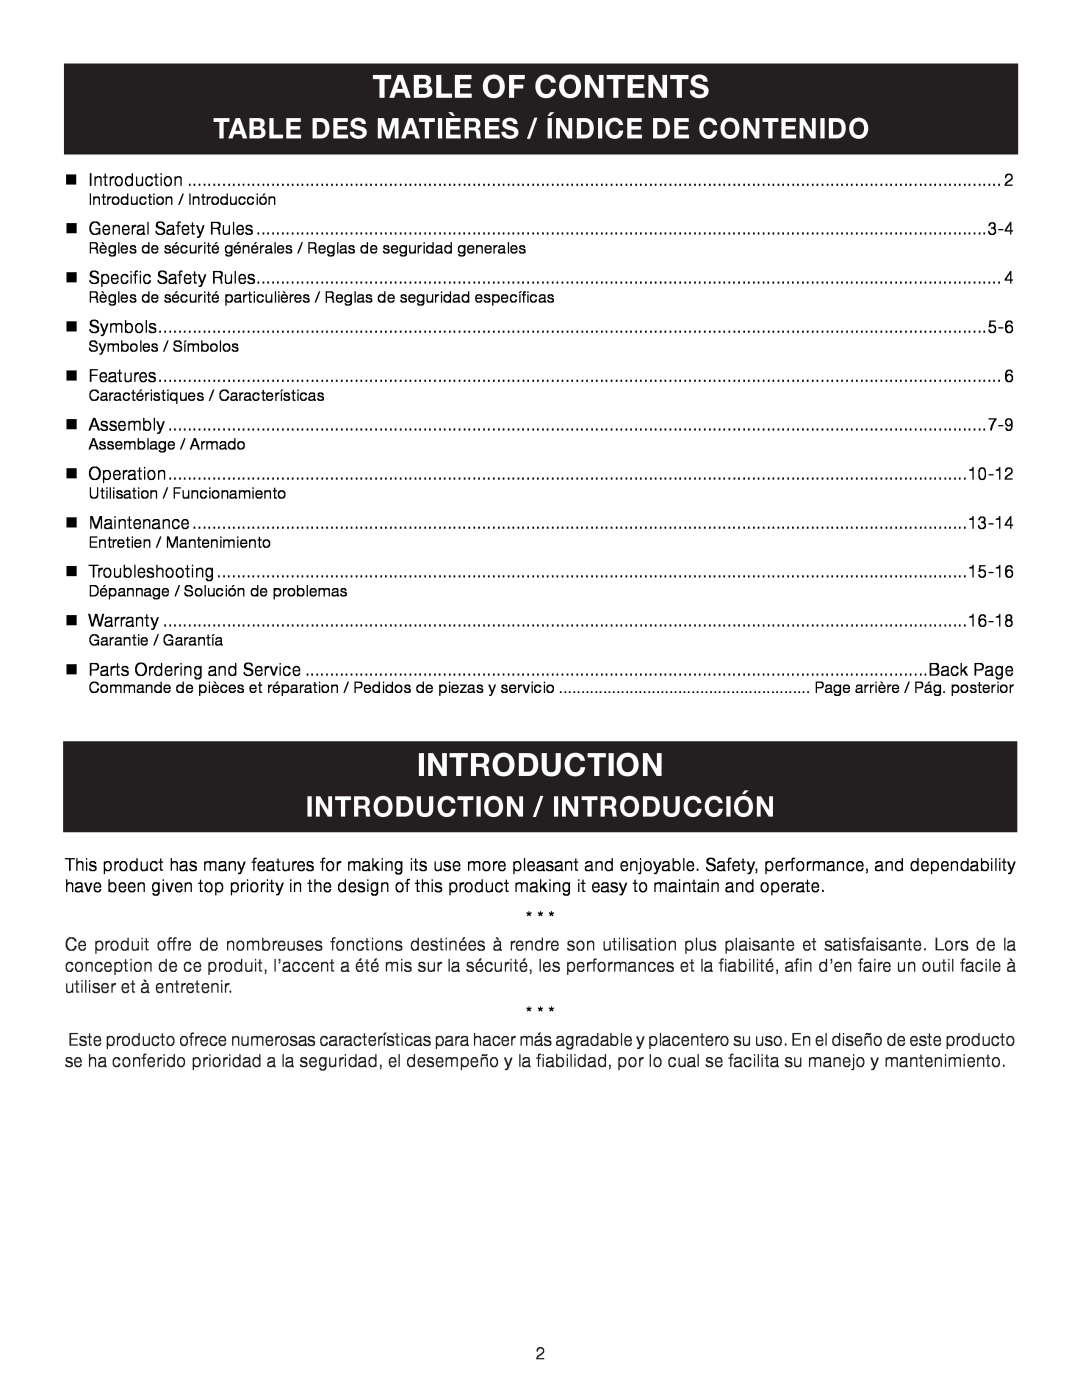 Ryobi RY26500, CS26 Table Of Contents, introduction, Table Des Matières / Índice De Contenido, Introduction / Introducción 